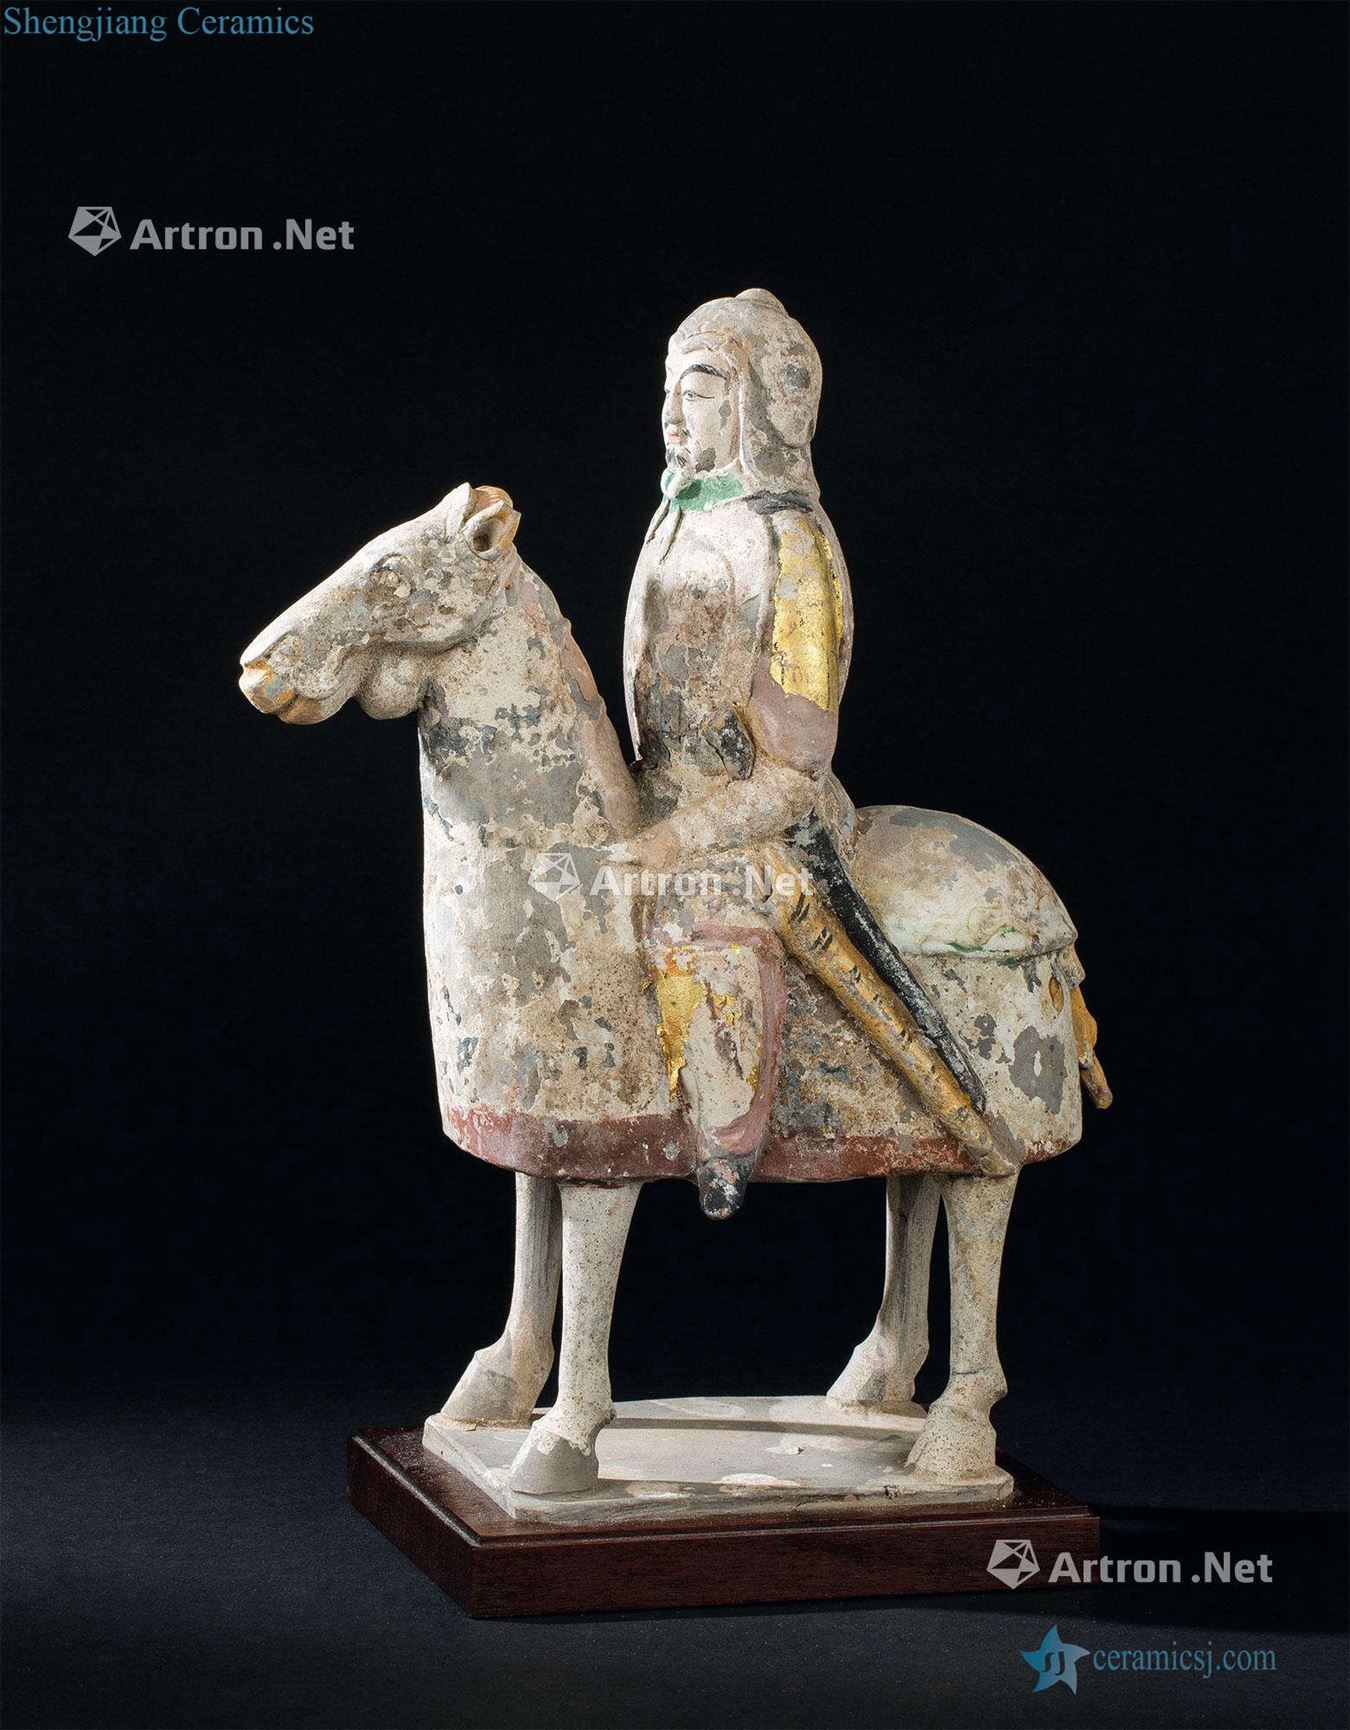 Beiqi (550-577), add the warriors on horseback